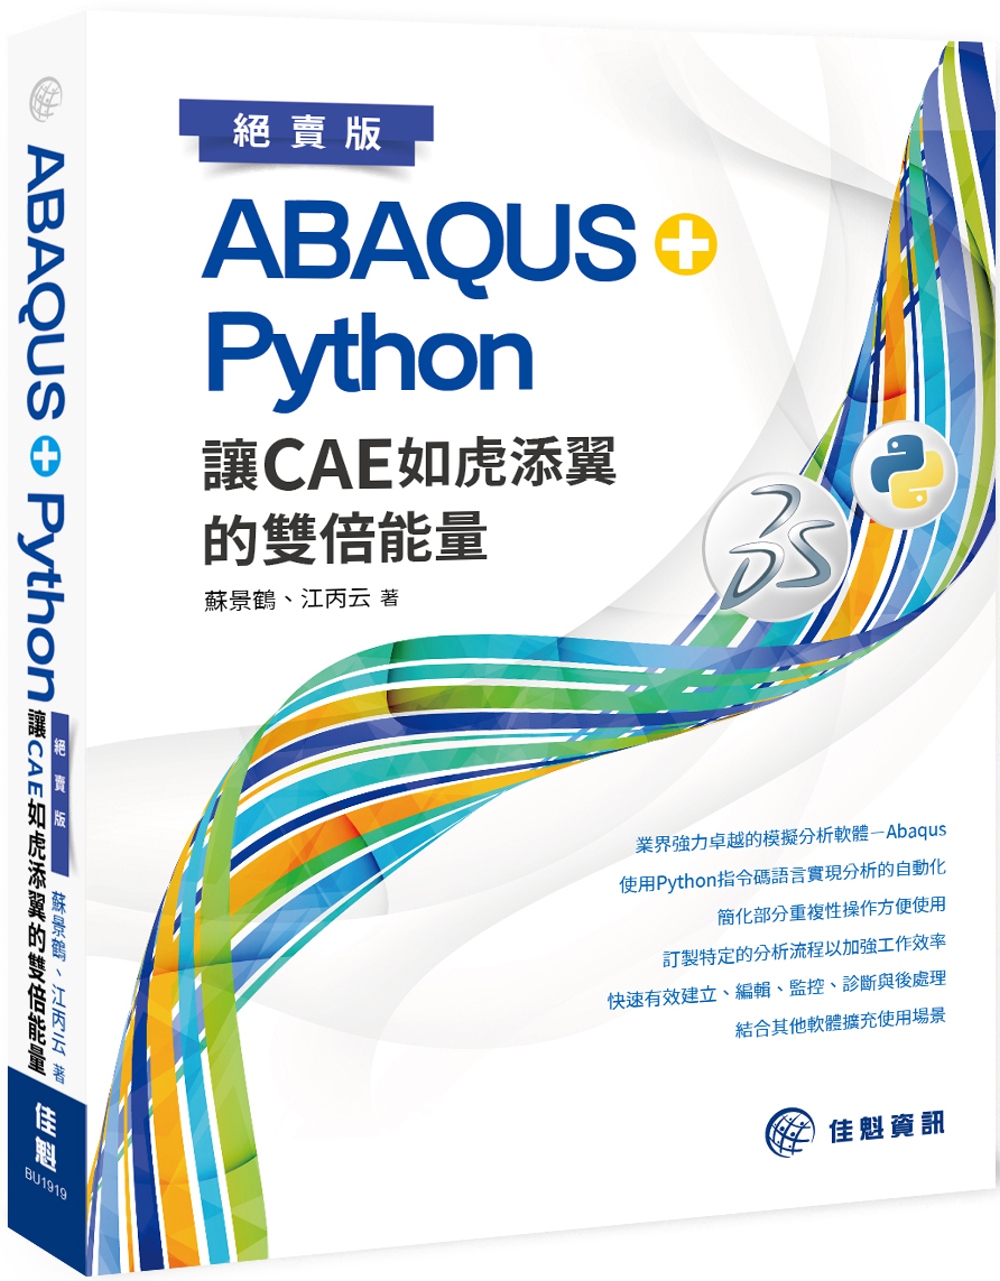 ABAQUS+Python 讓CAE如虎添翼的雙倍能量（絕賣版）(限台灣)